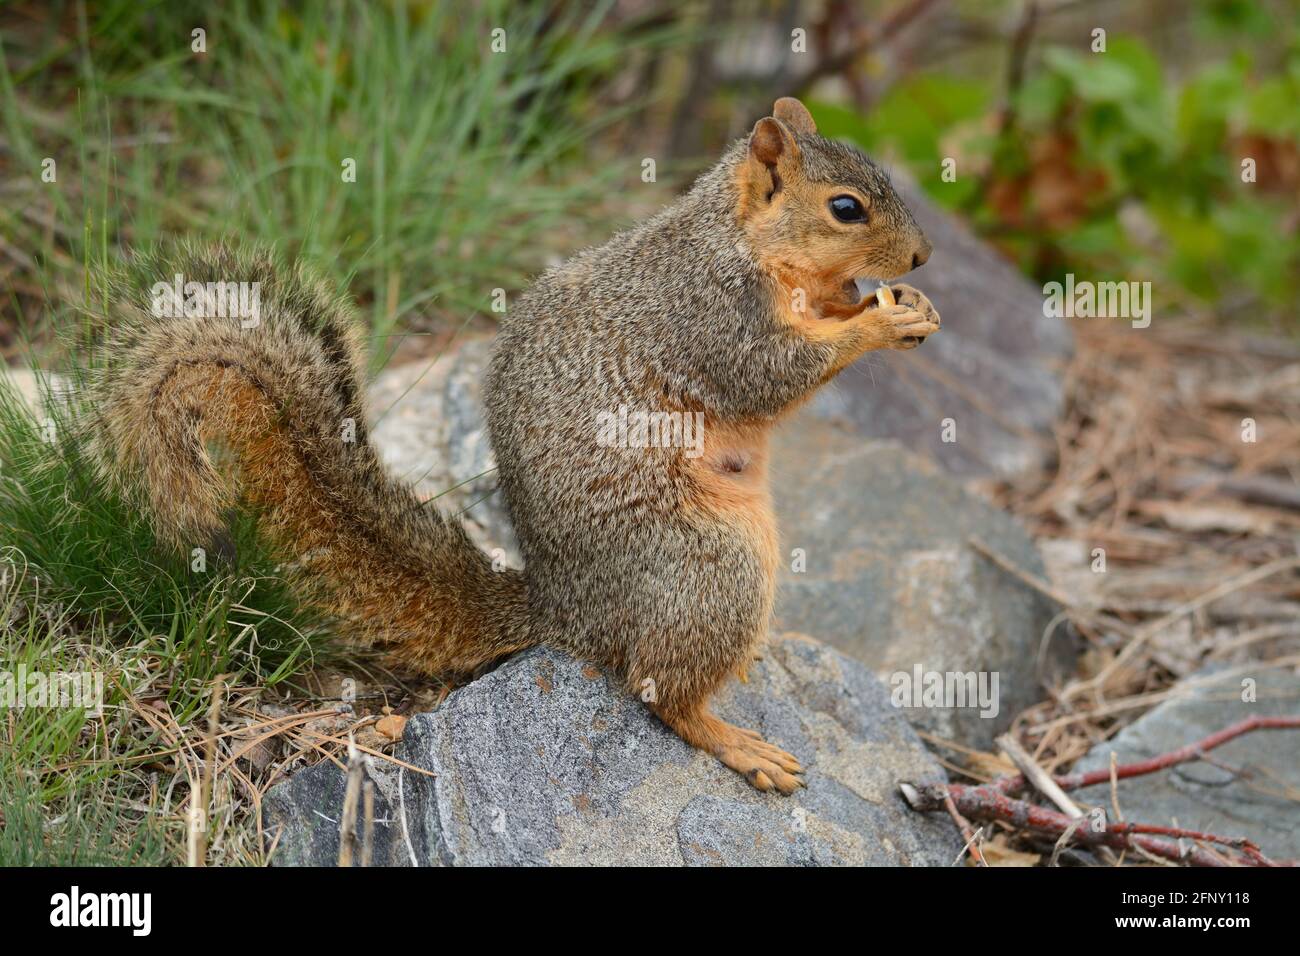 Écureuil roux de renard enceinte avec la tétine debout sur la roche pendant manger du grain de maïs Banque D'Images